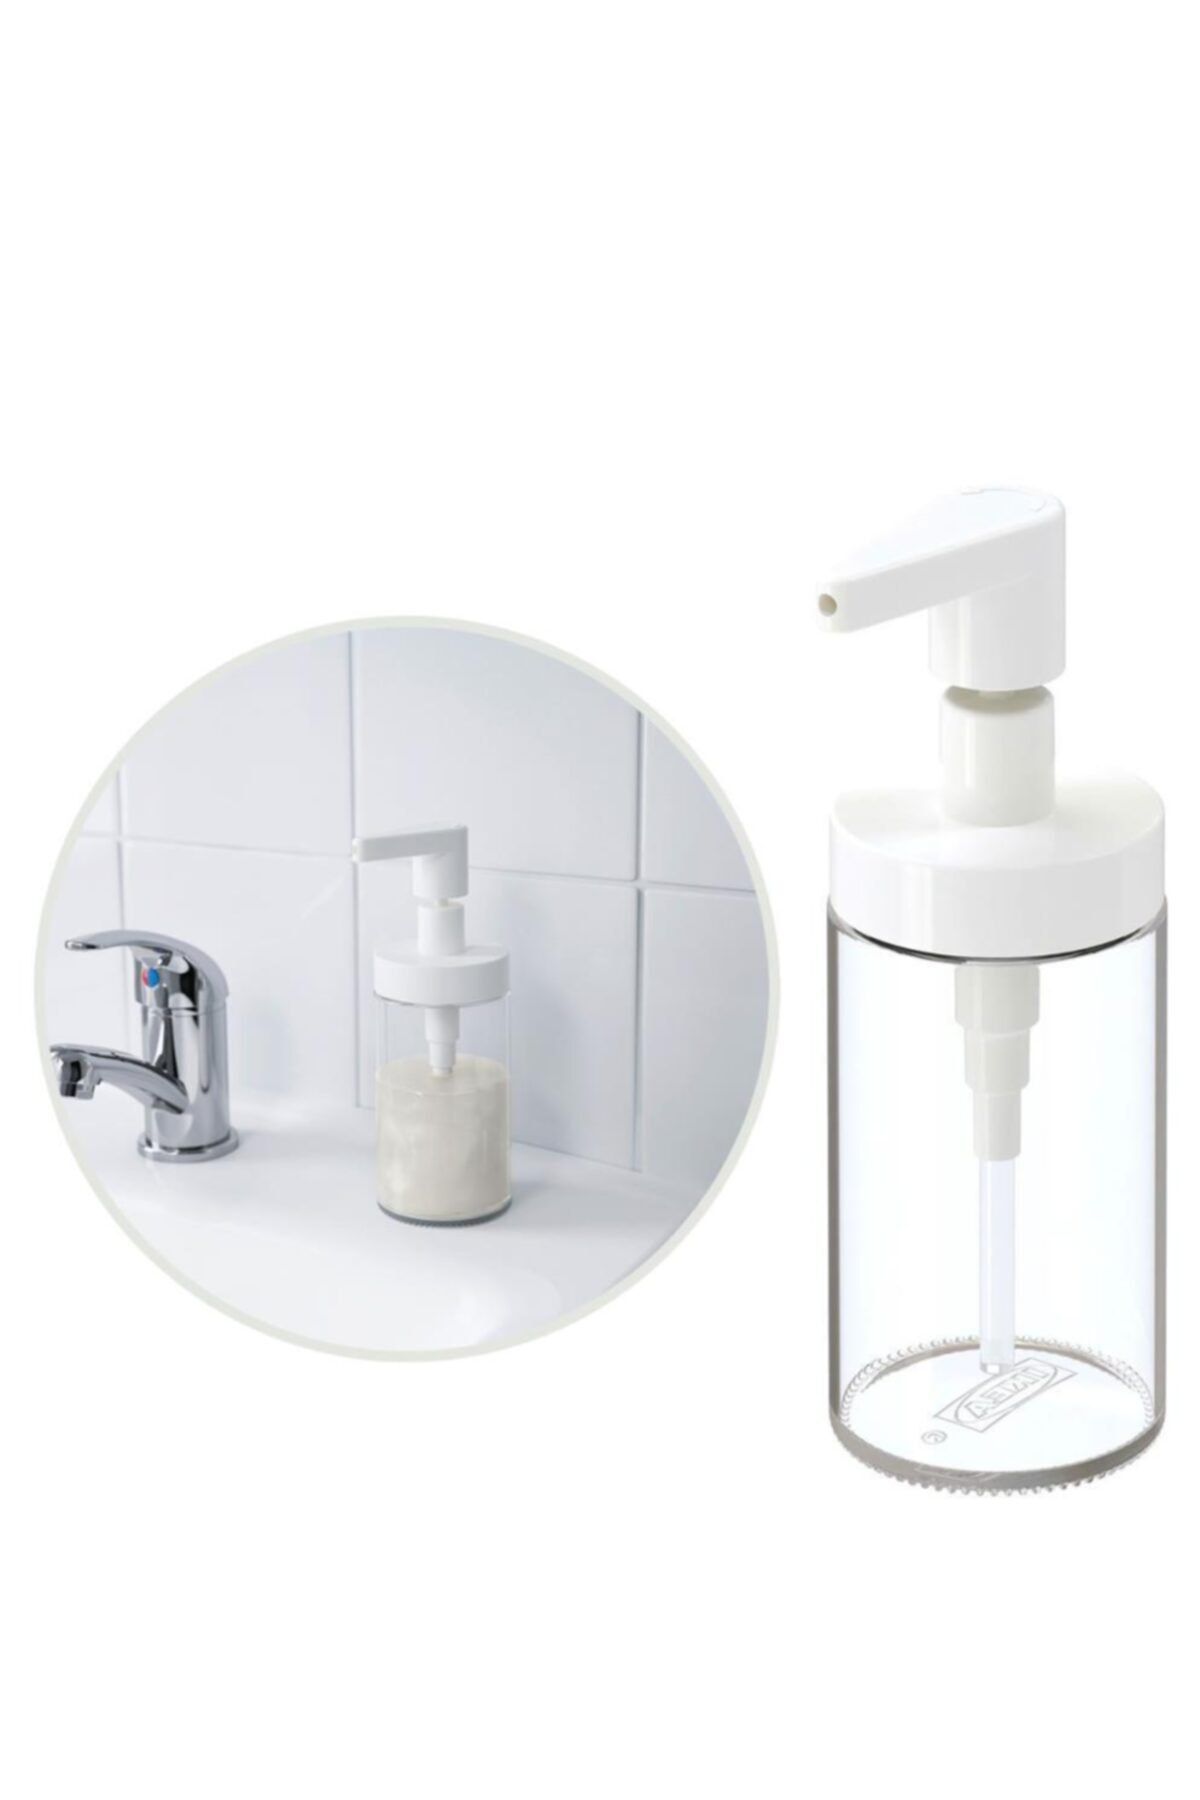 IKEA Tackan Sıvı Sabunluk Banyo Tuvalet Aksesuarı 250ml